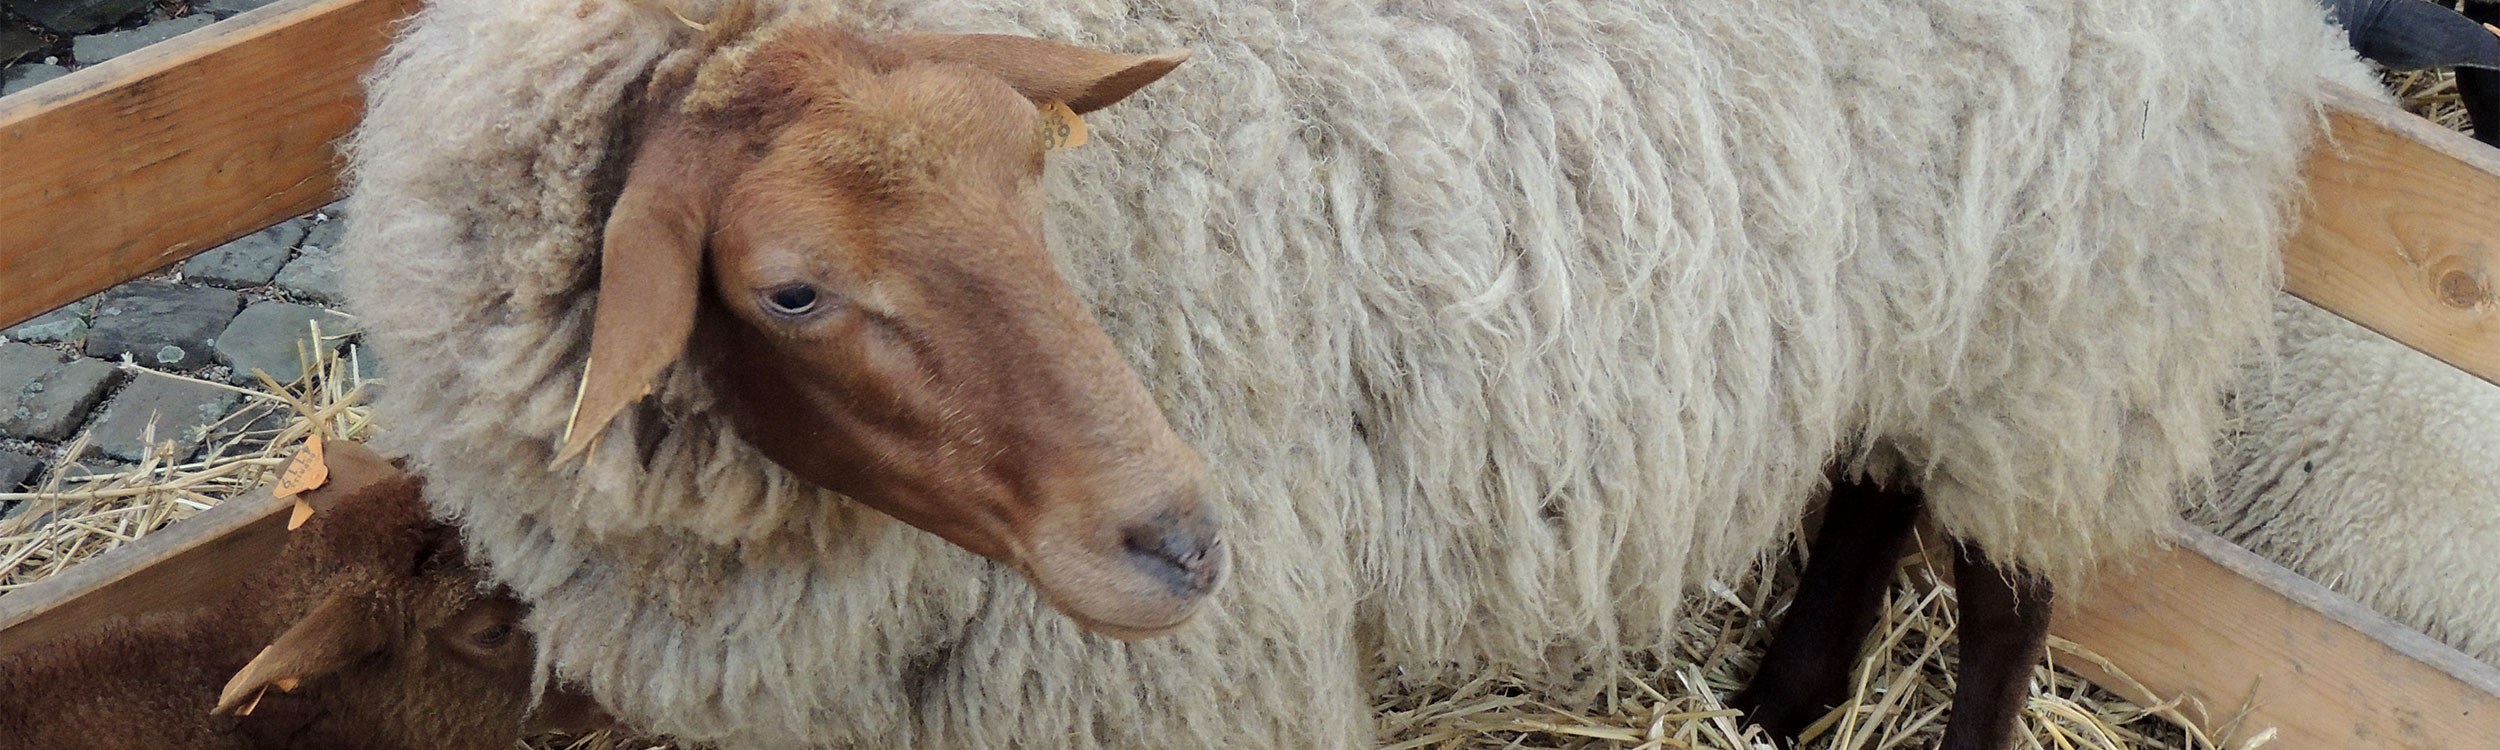 roux-ardennais-mouton-tissage